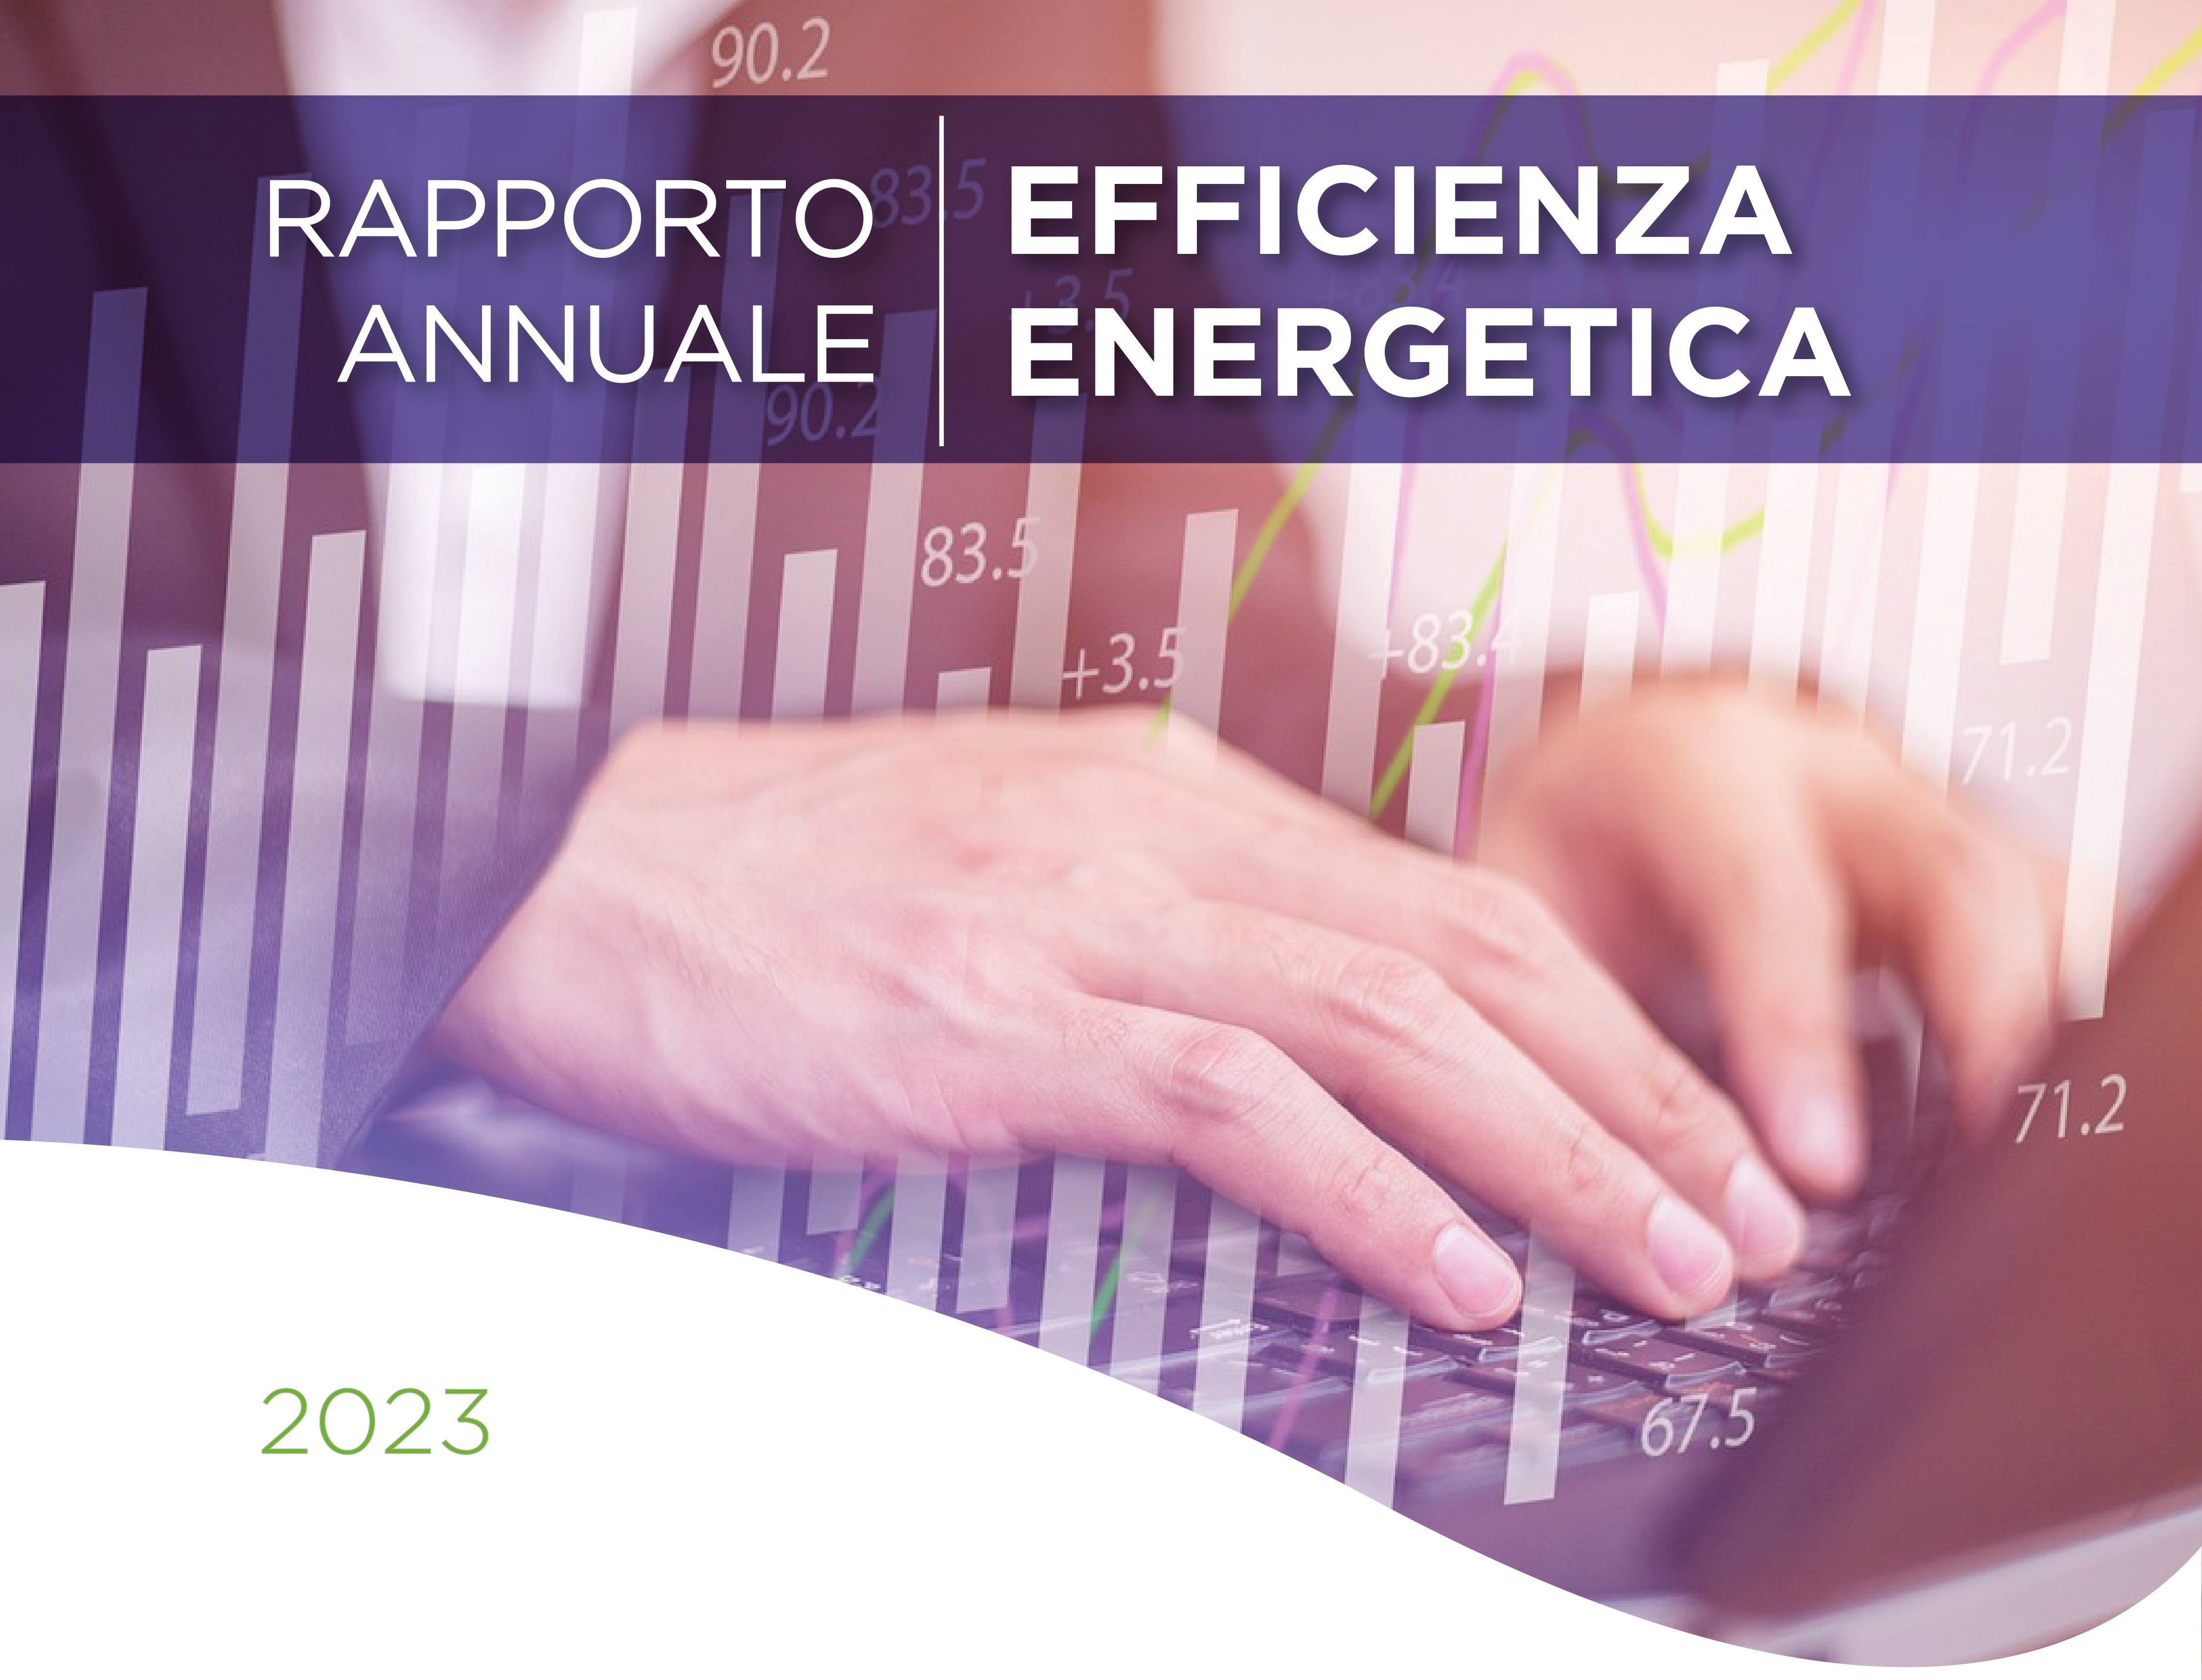 La copertina del Rapporto Annuale sull'Efficienza Energetica 2023 con al centro la scritta "Analisi e risultati delle policy di efficienza energetica del nostro Paese" 